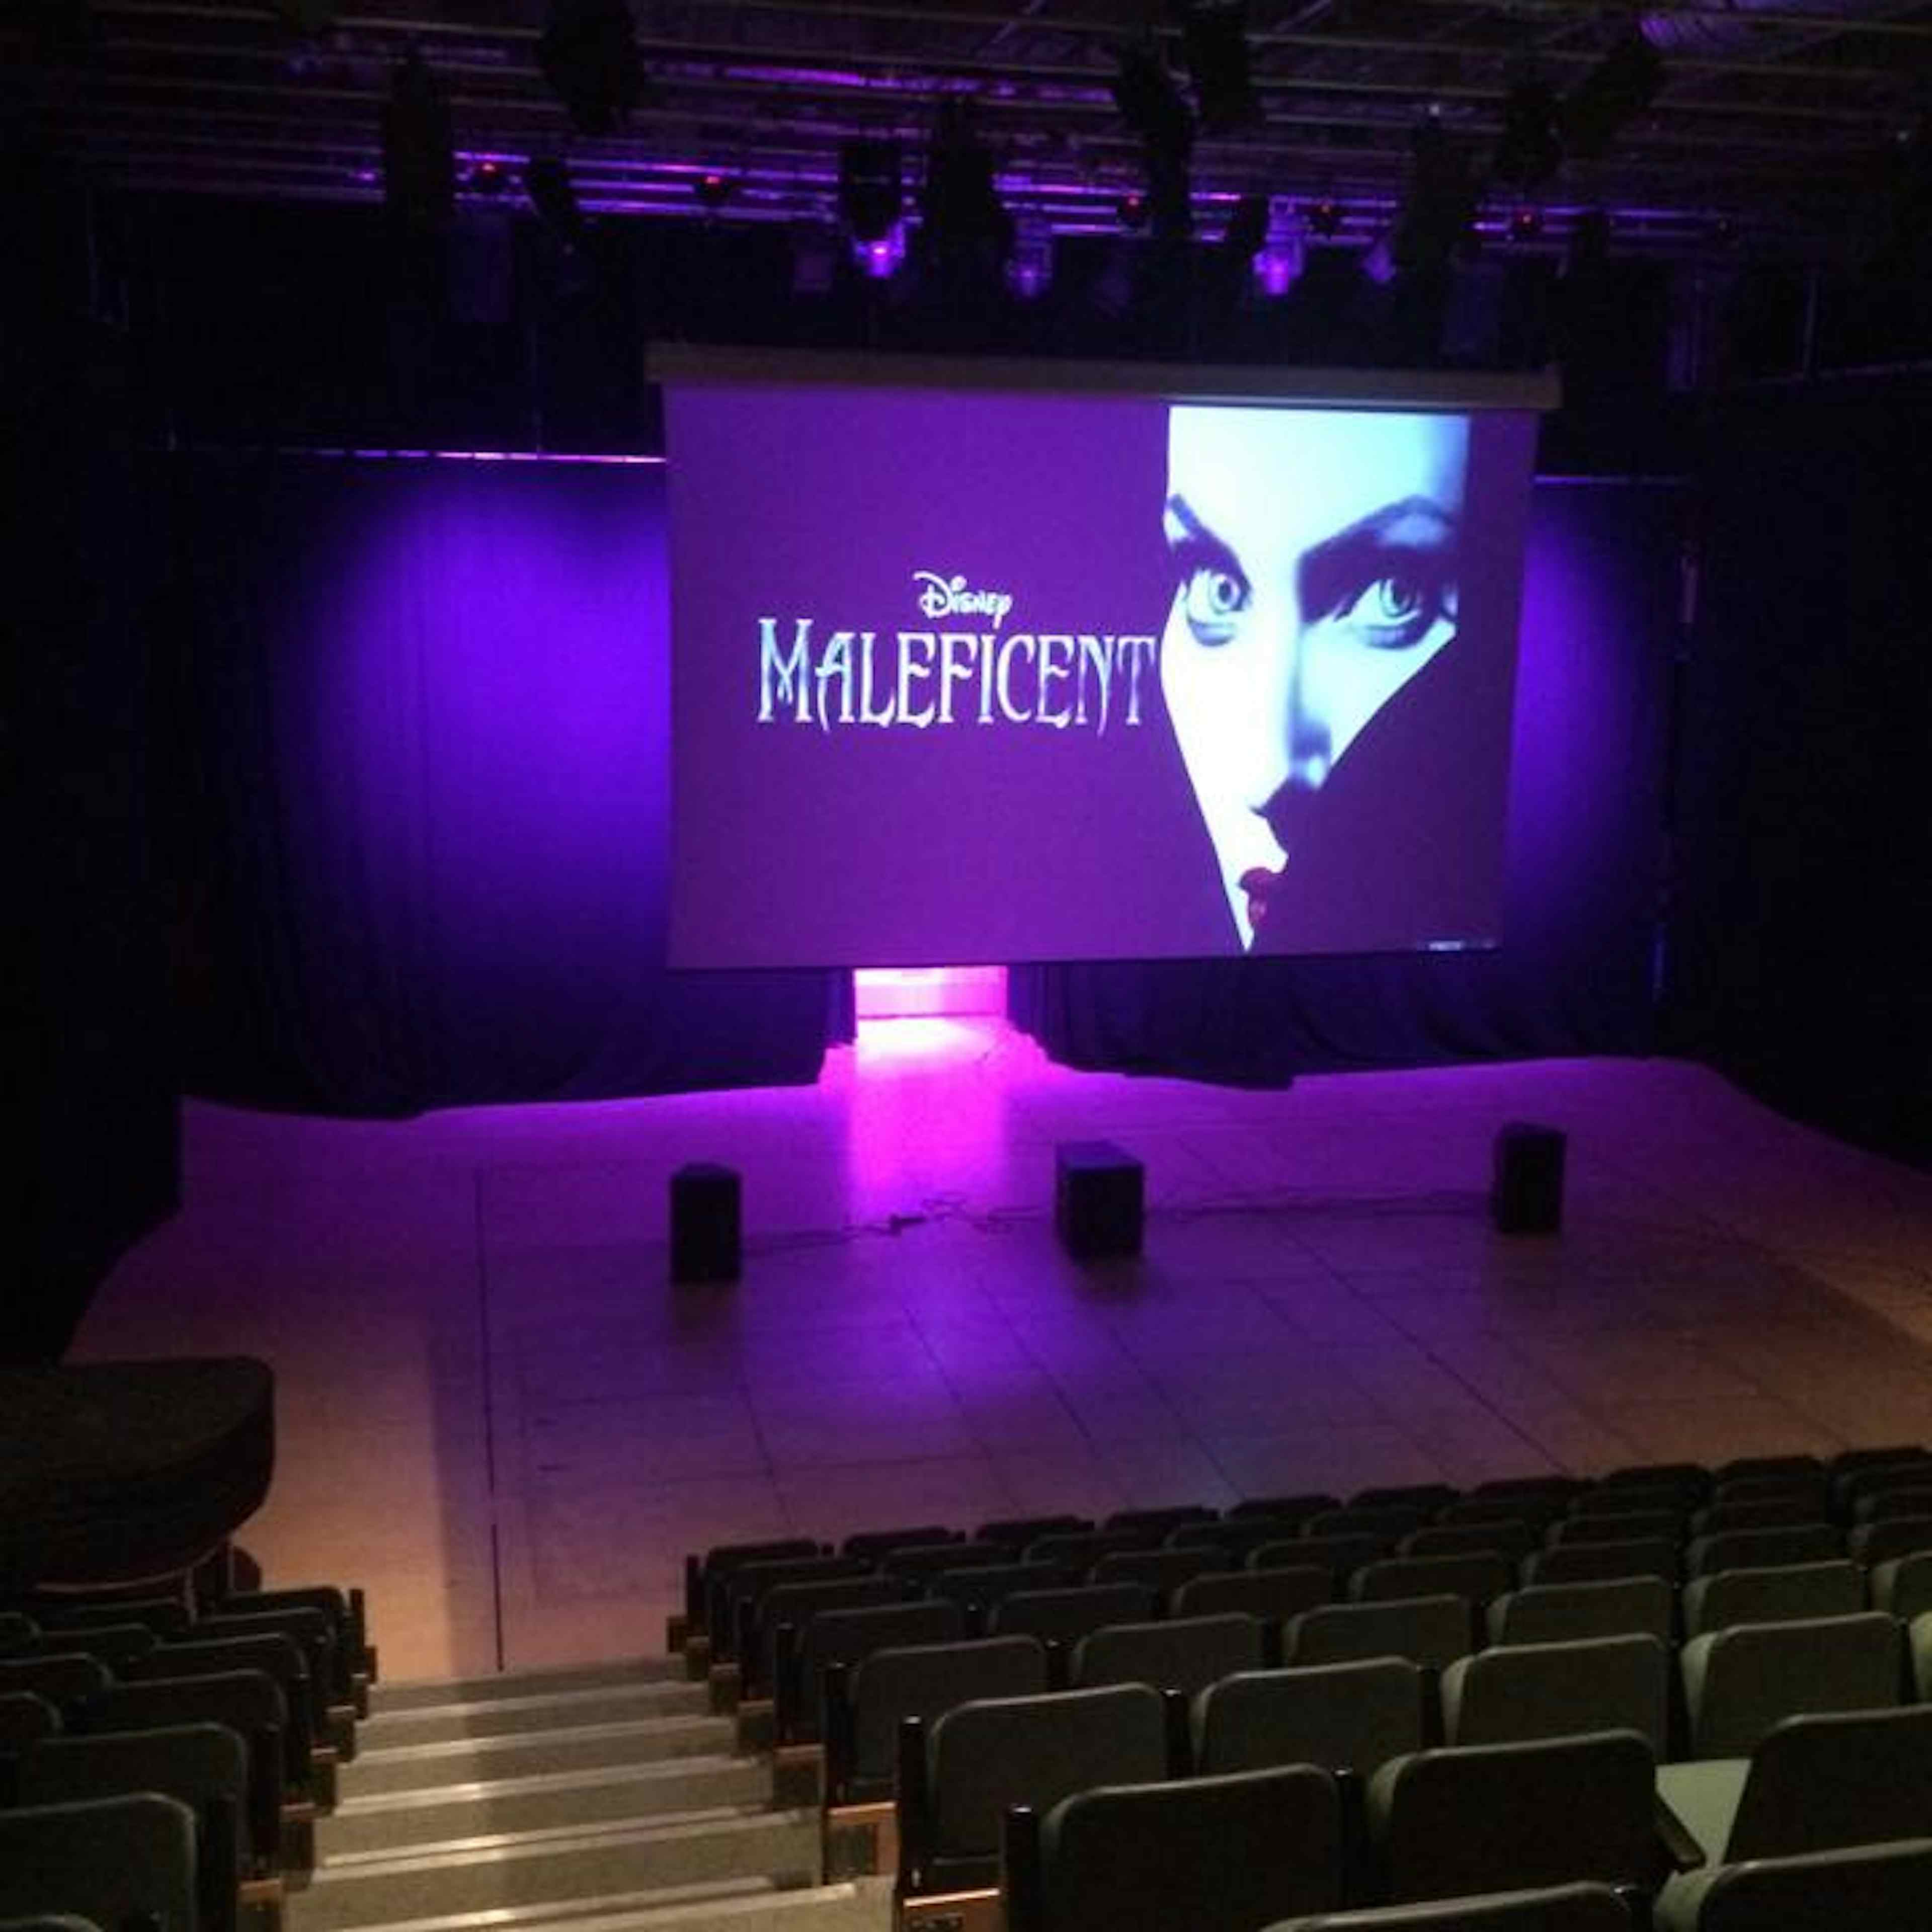 Marlborough College - The Ellis Theatre image 3